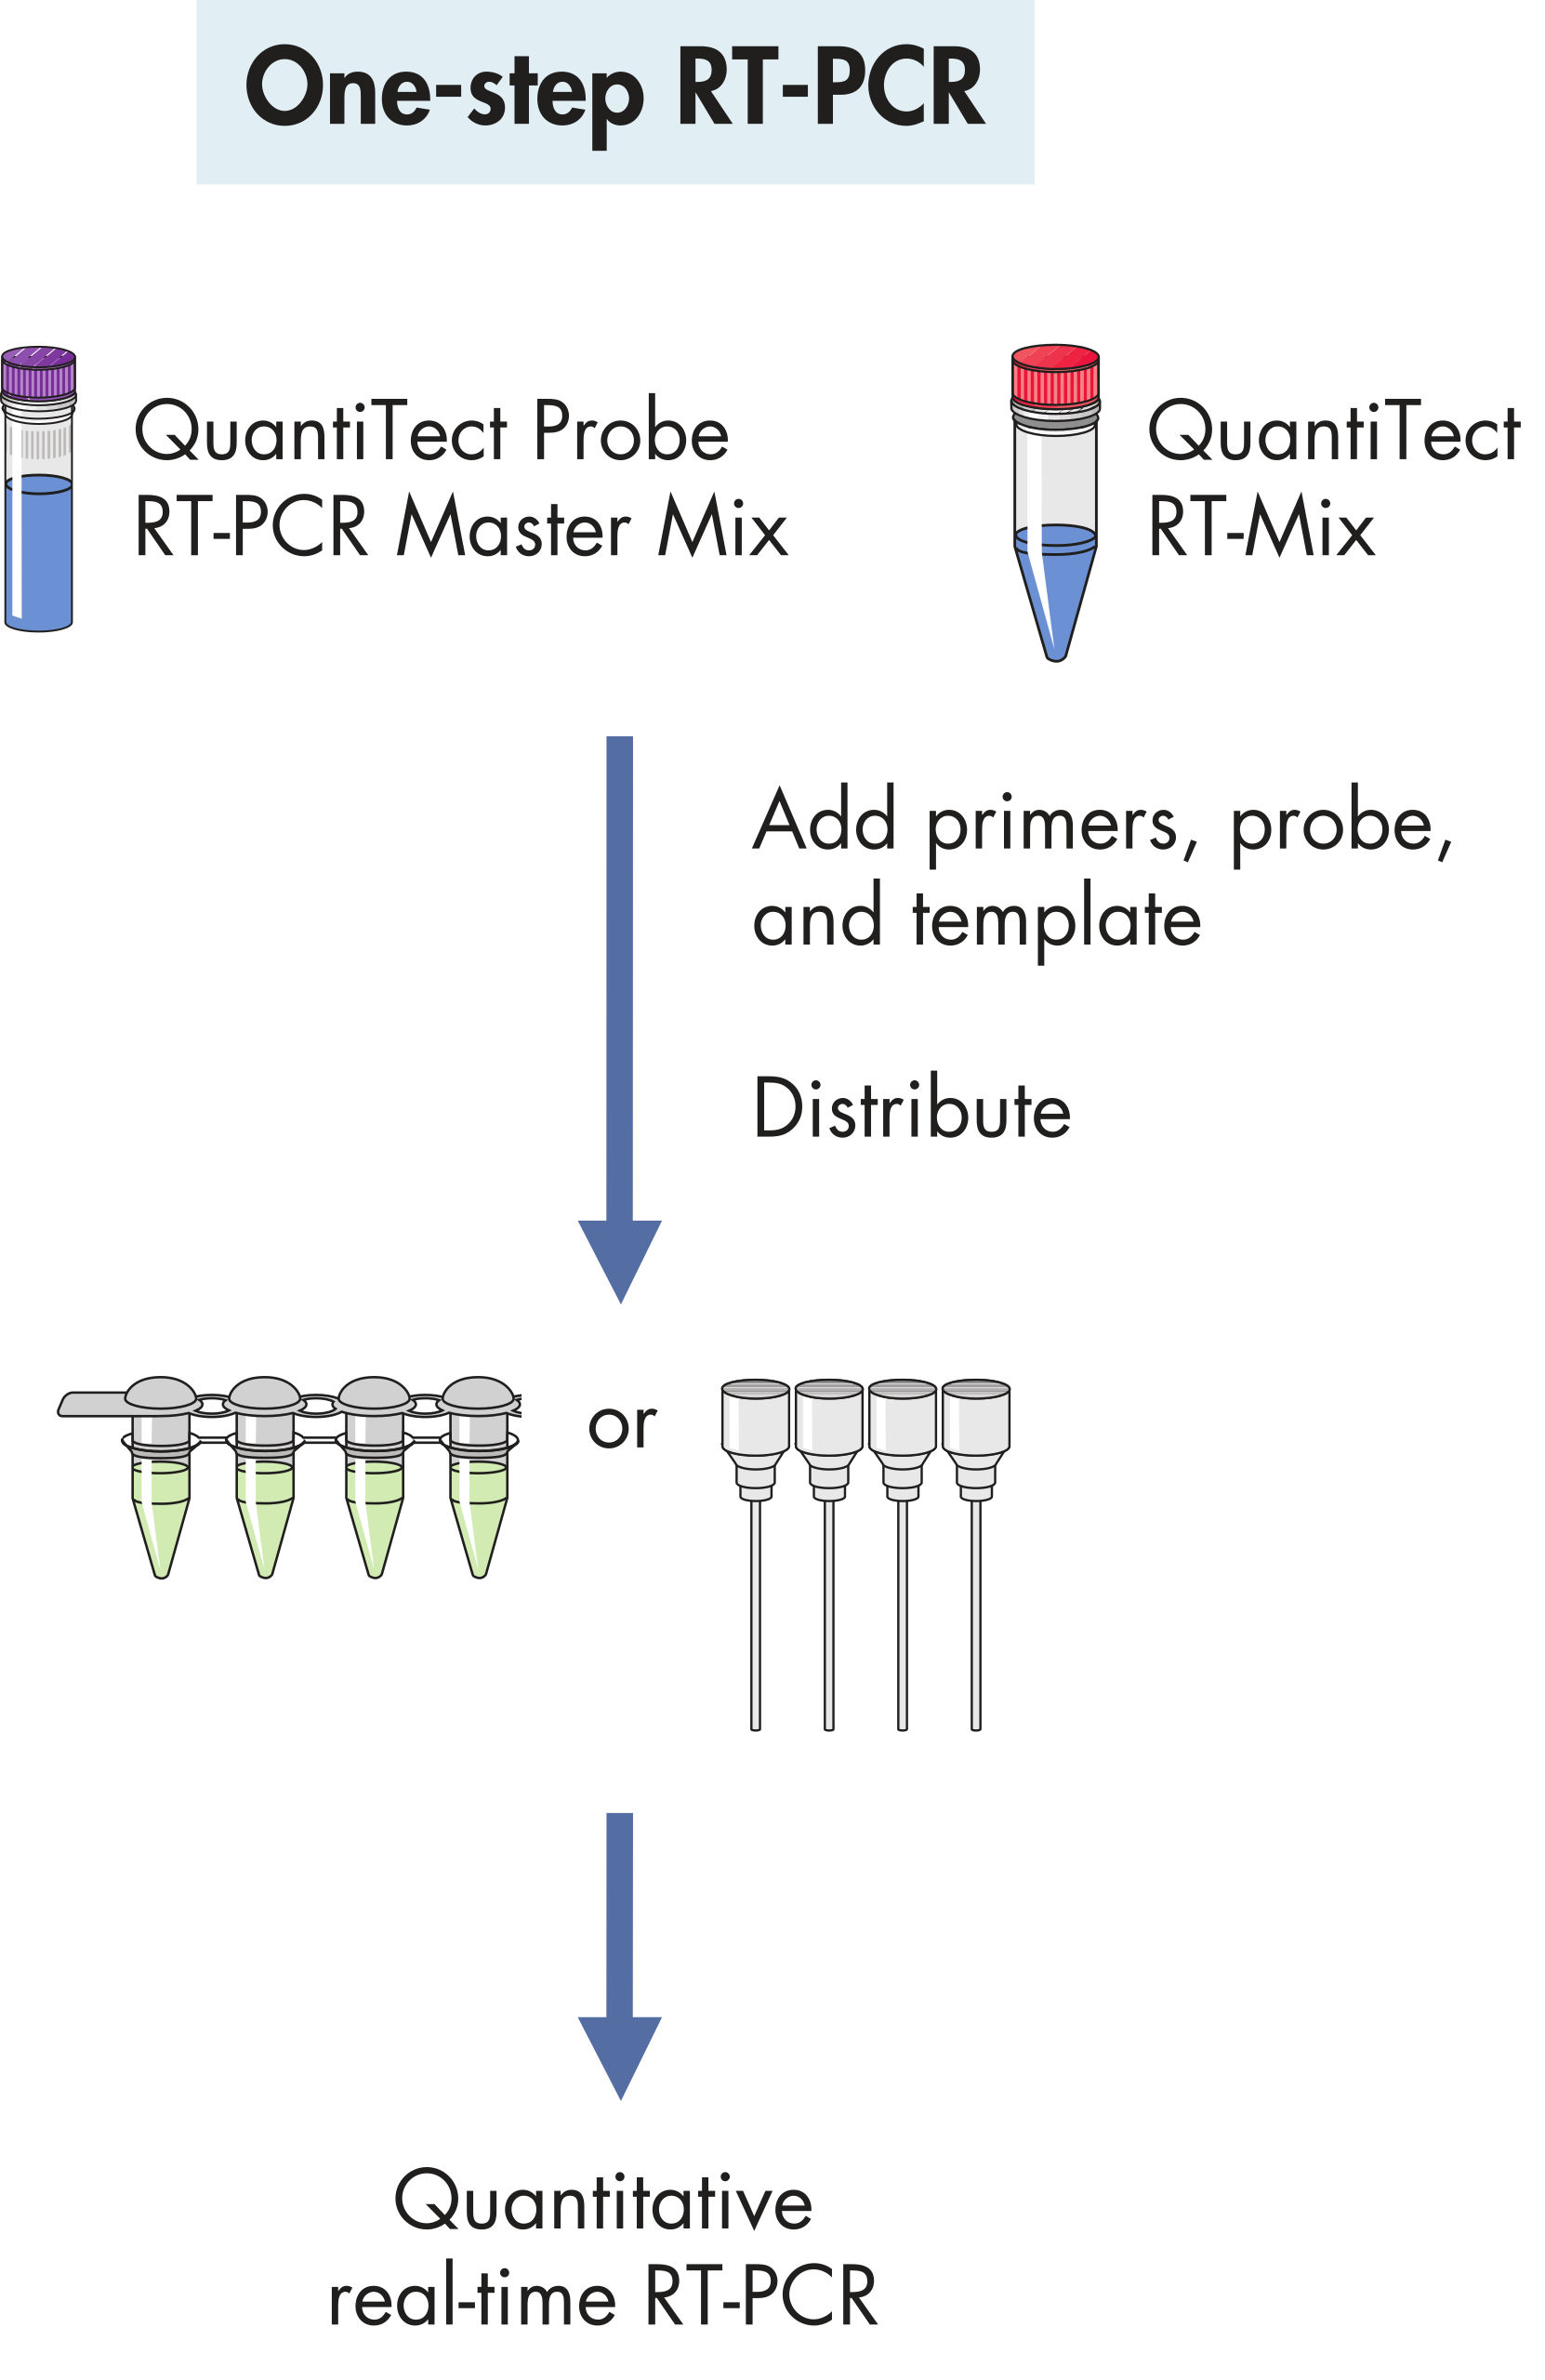 QuantiTect RT-PCR